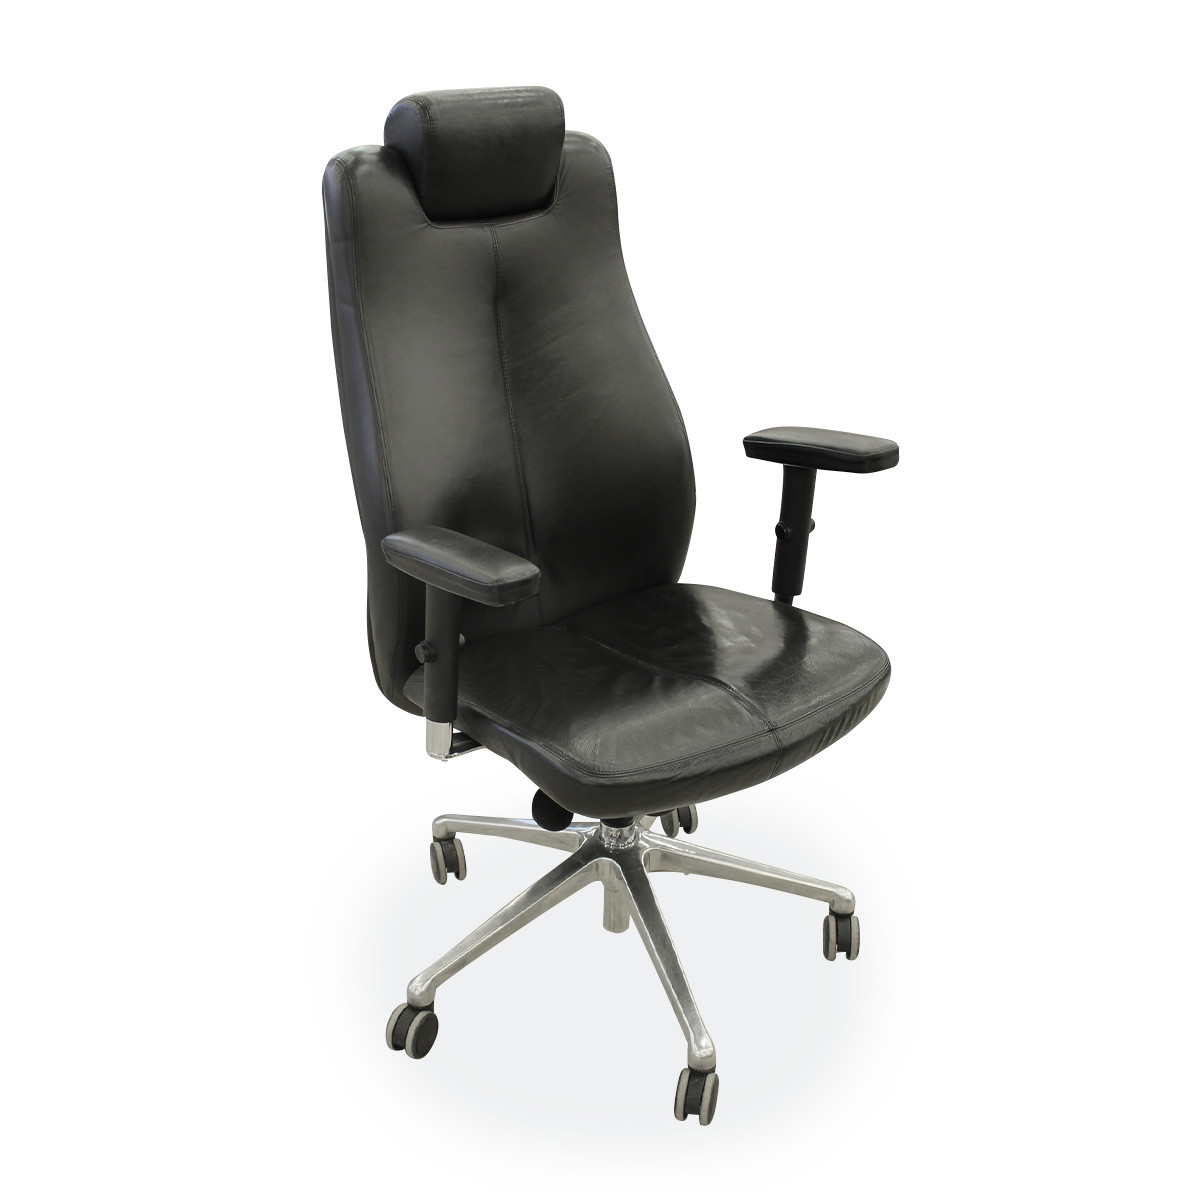 Naudota darbo kėdė, ND-kd-257 , juoda, (maksimali apkrova 110 kg)